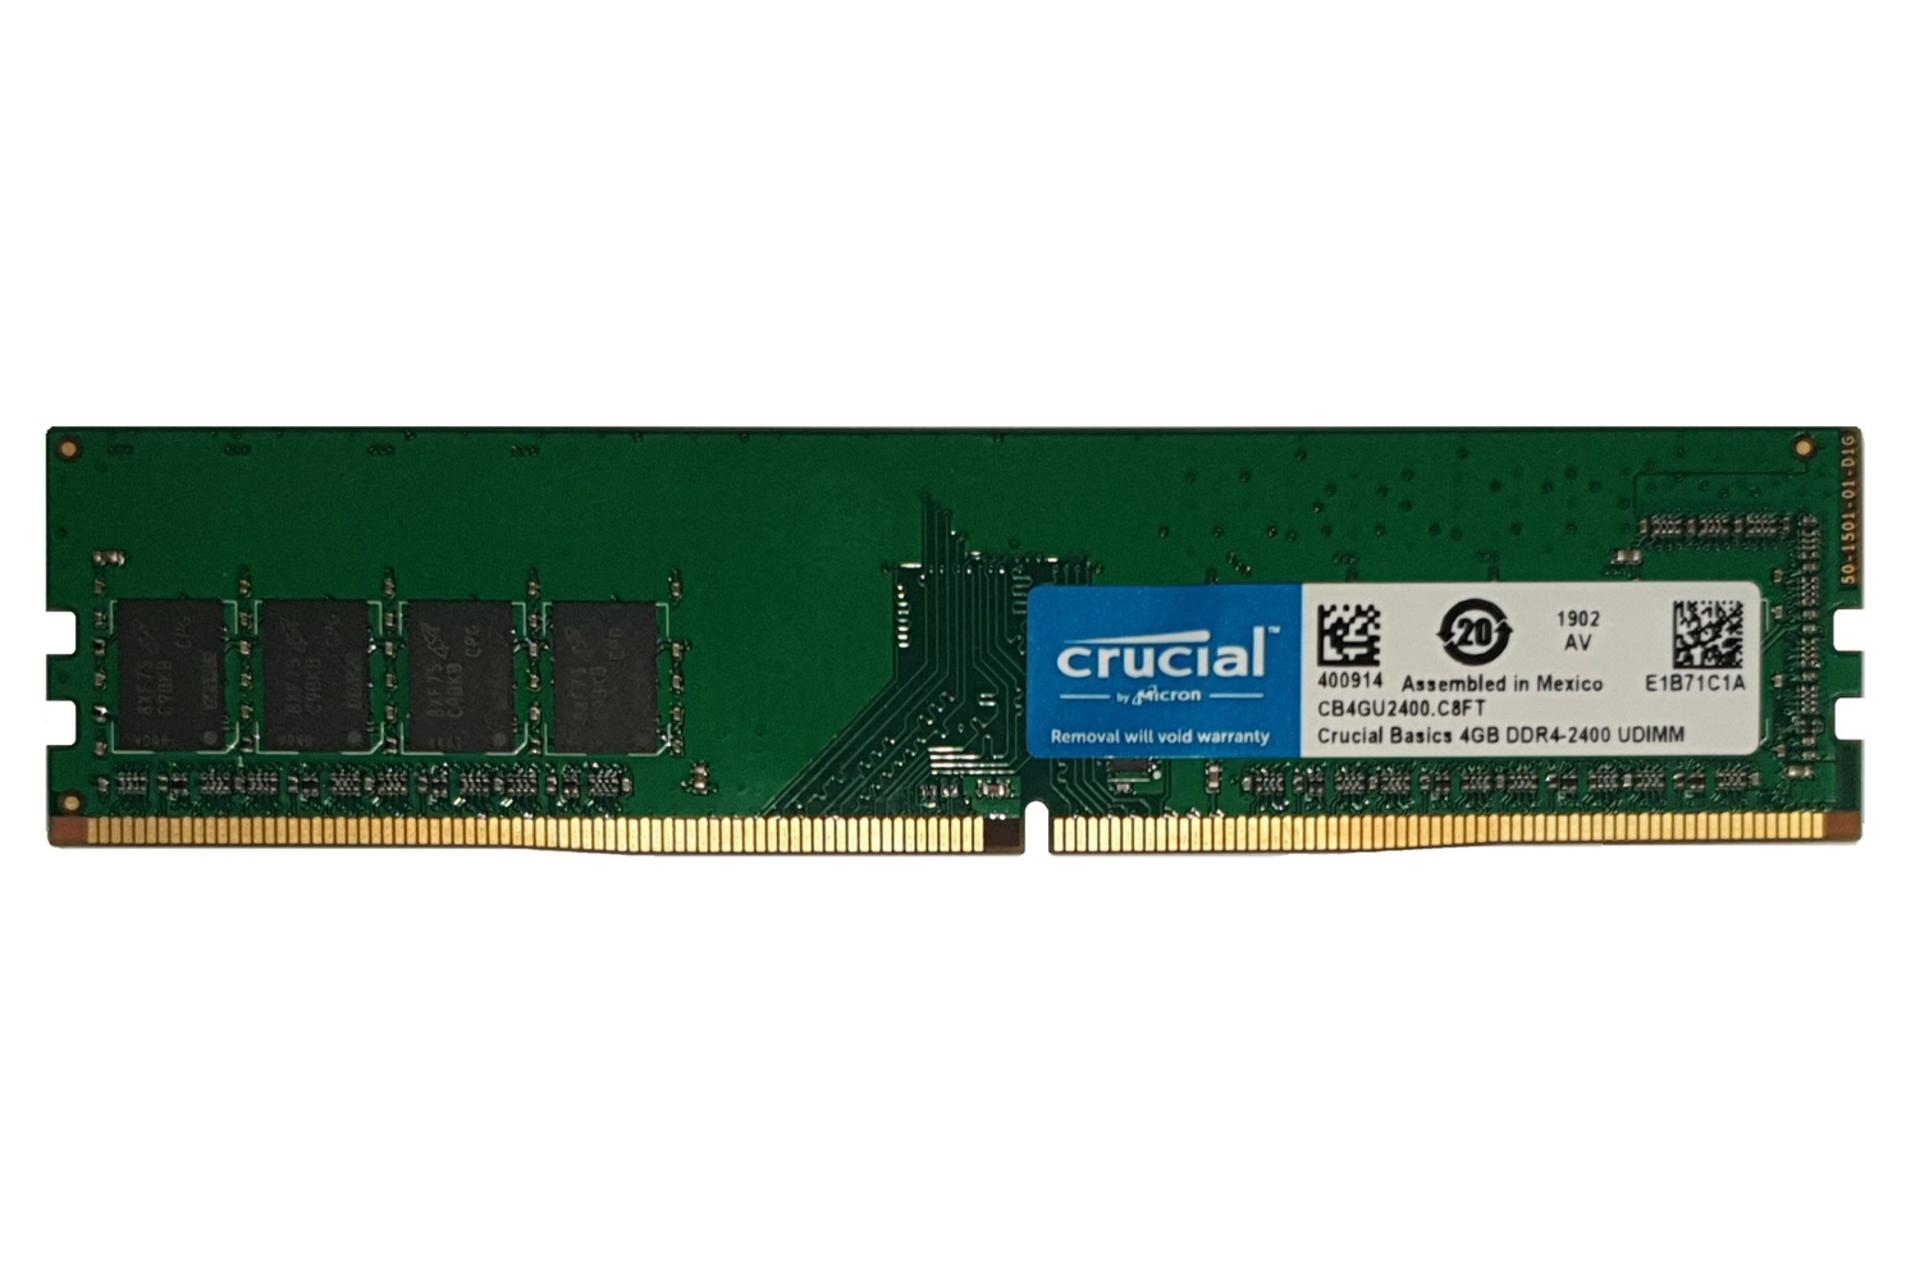 نمای جلو رم کروشیال CB4GU2400 Basics ظرفیت 4 گیگابایت از نوع DDR4-2400